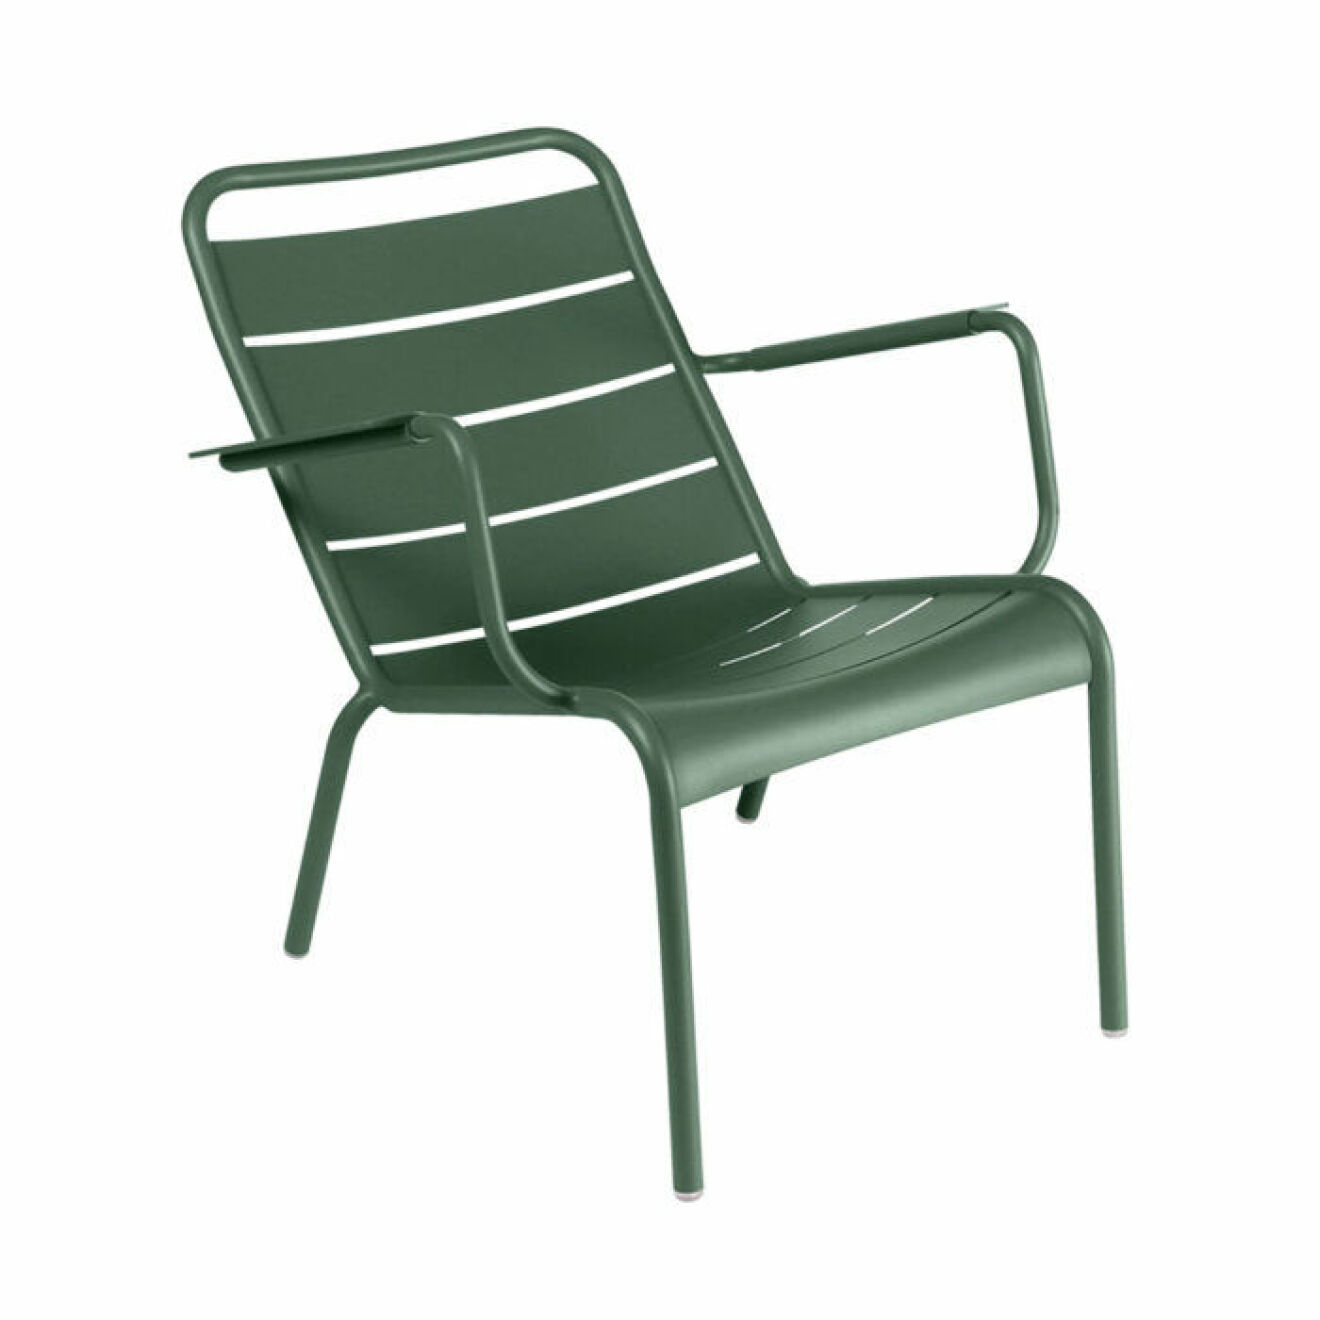 Snygg grön stol till balkongen